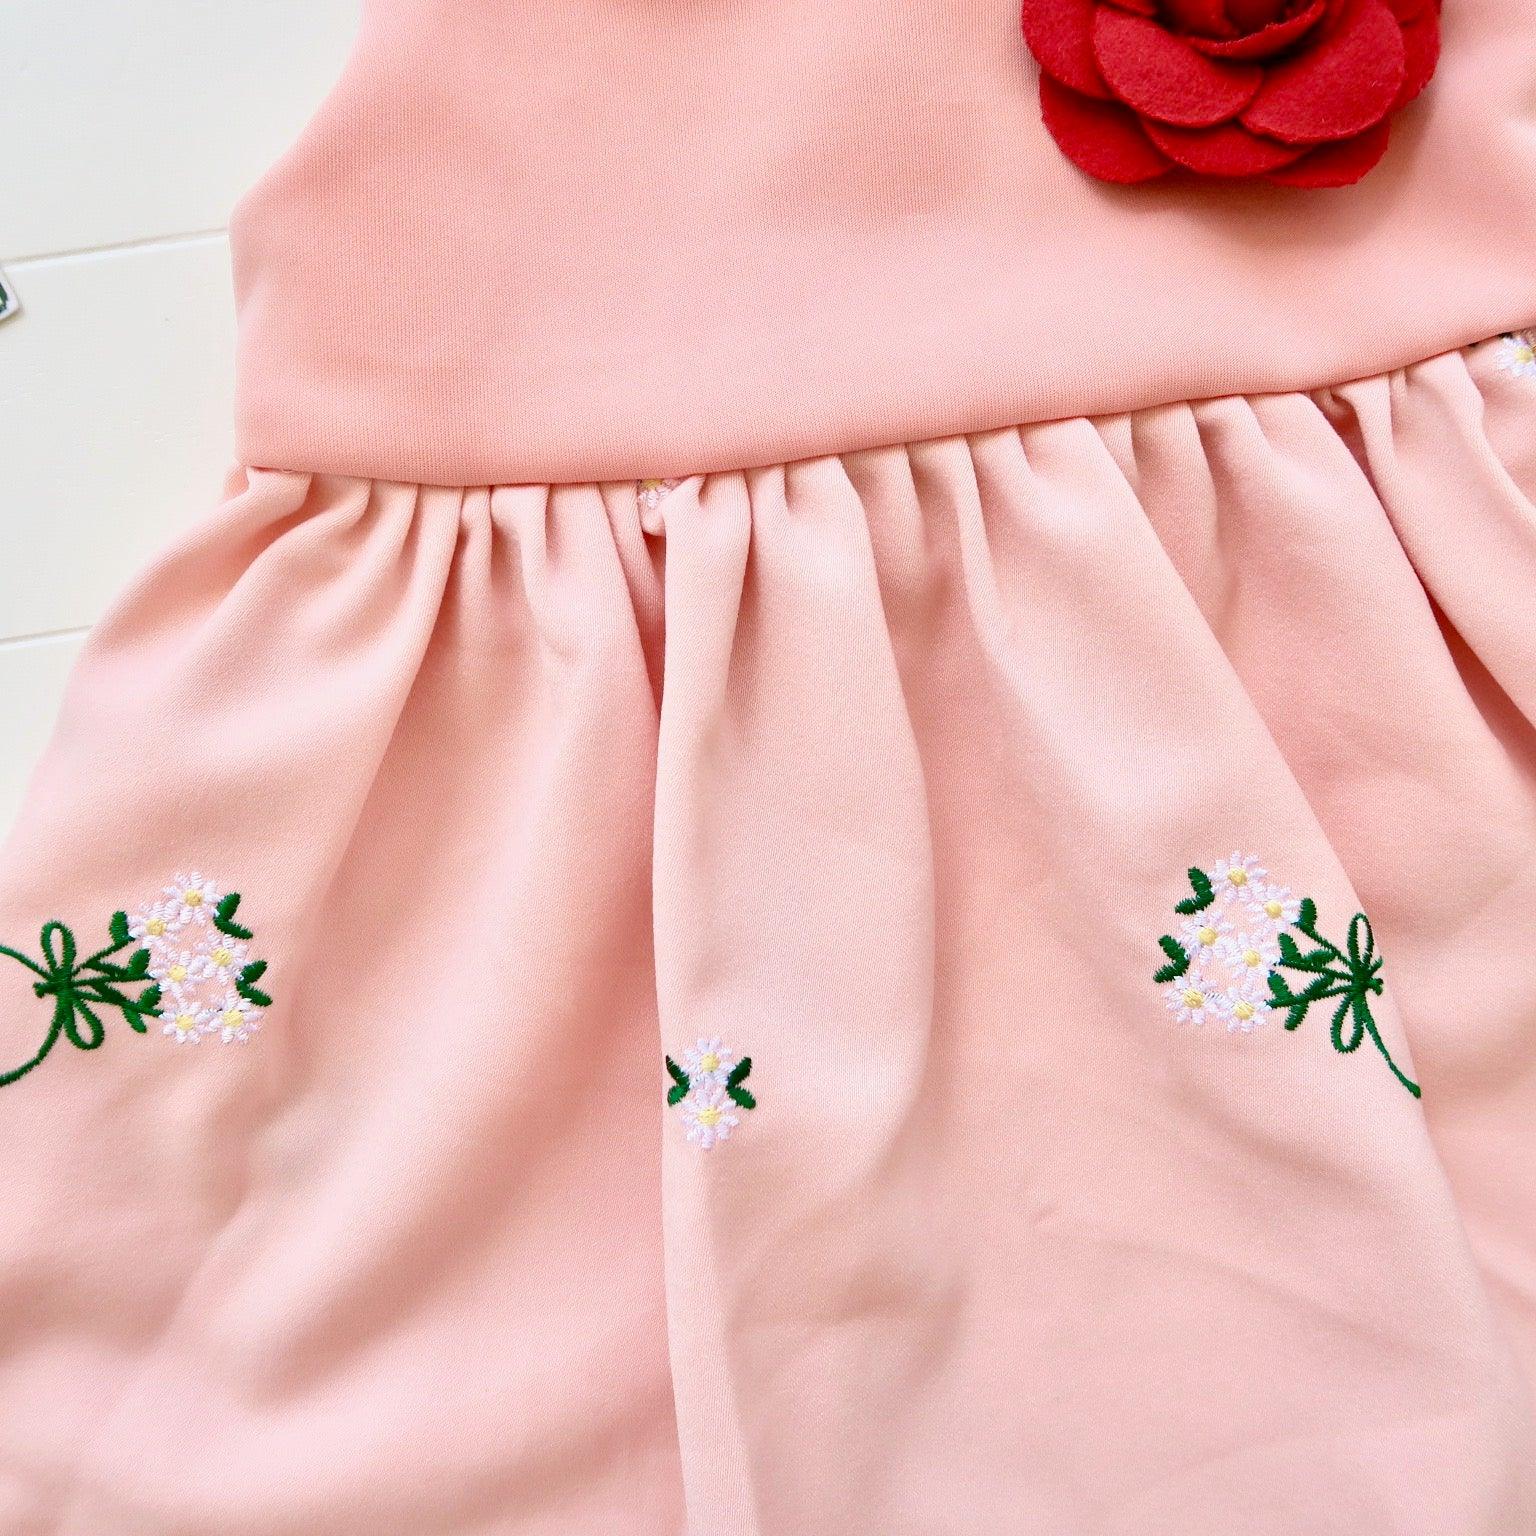 Iris Dress in Peach Embroidery - Lil' Tati